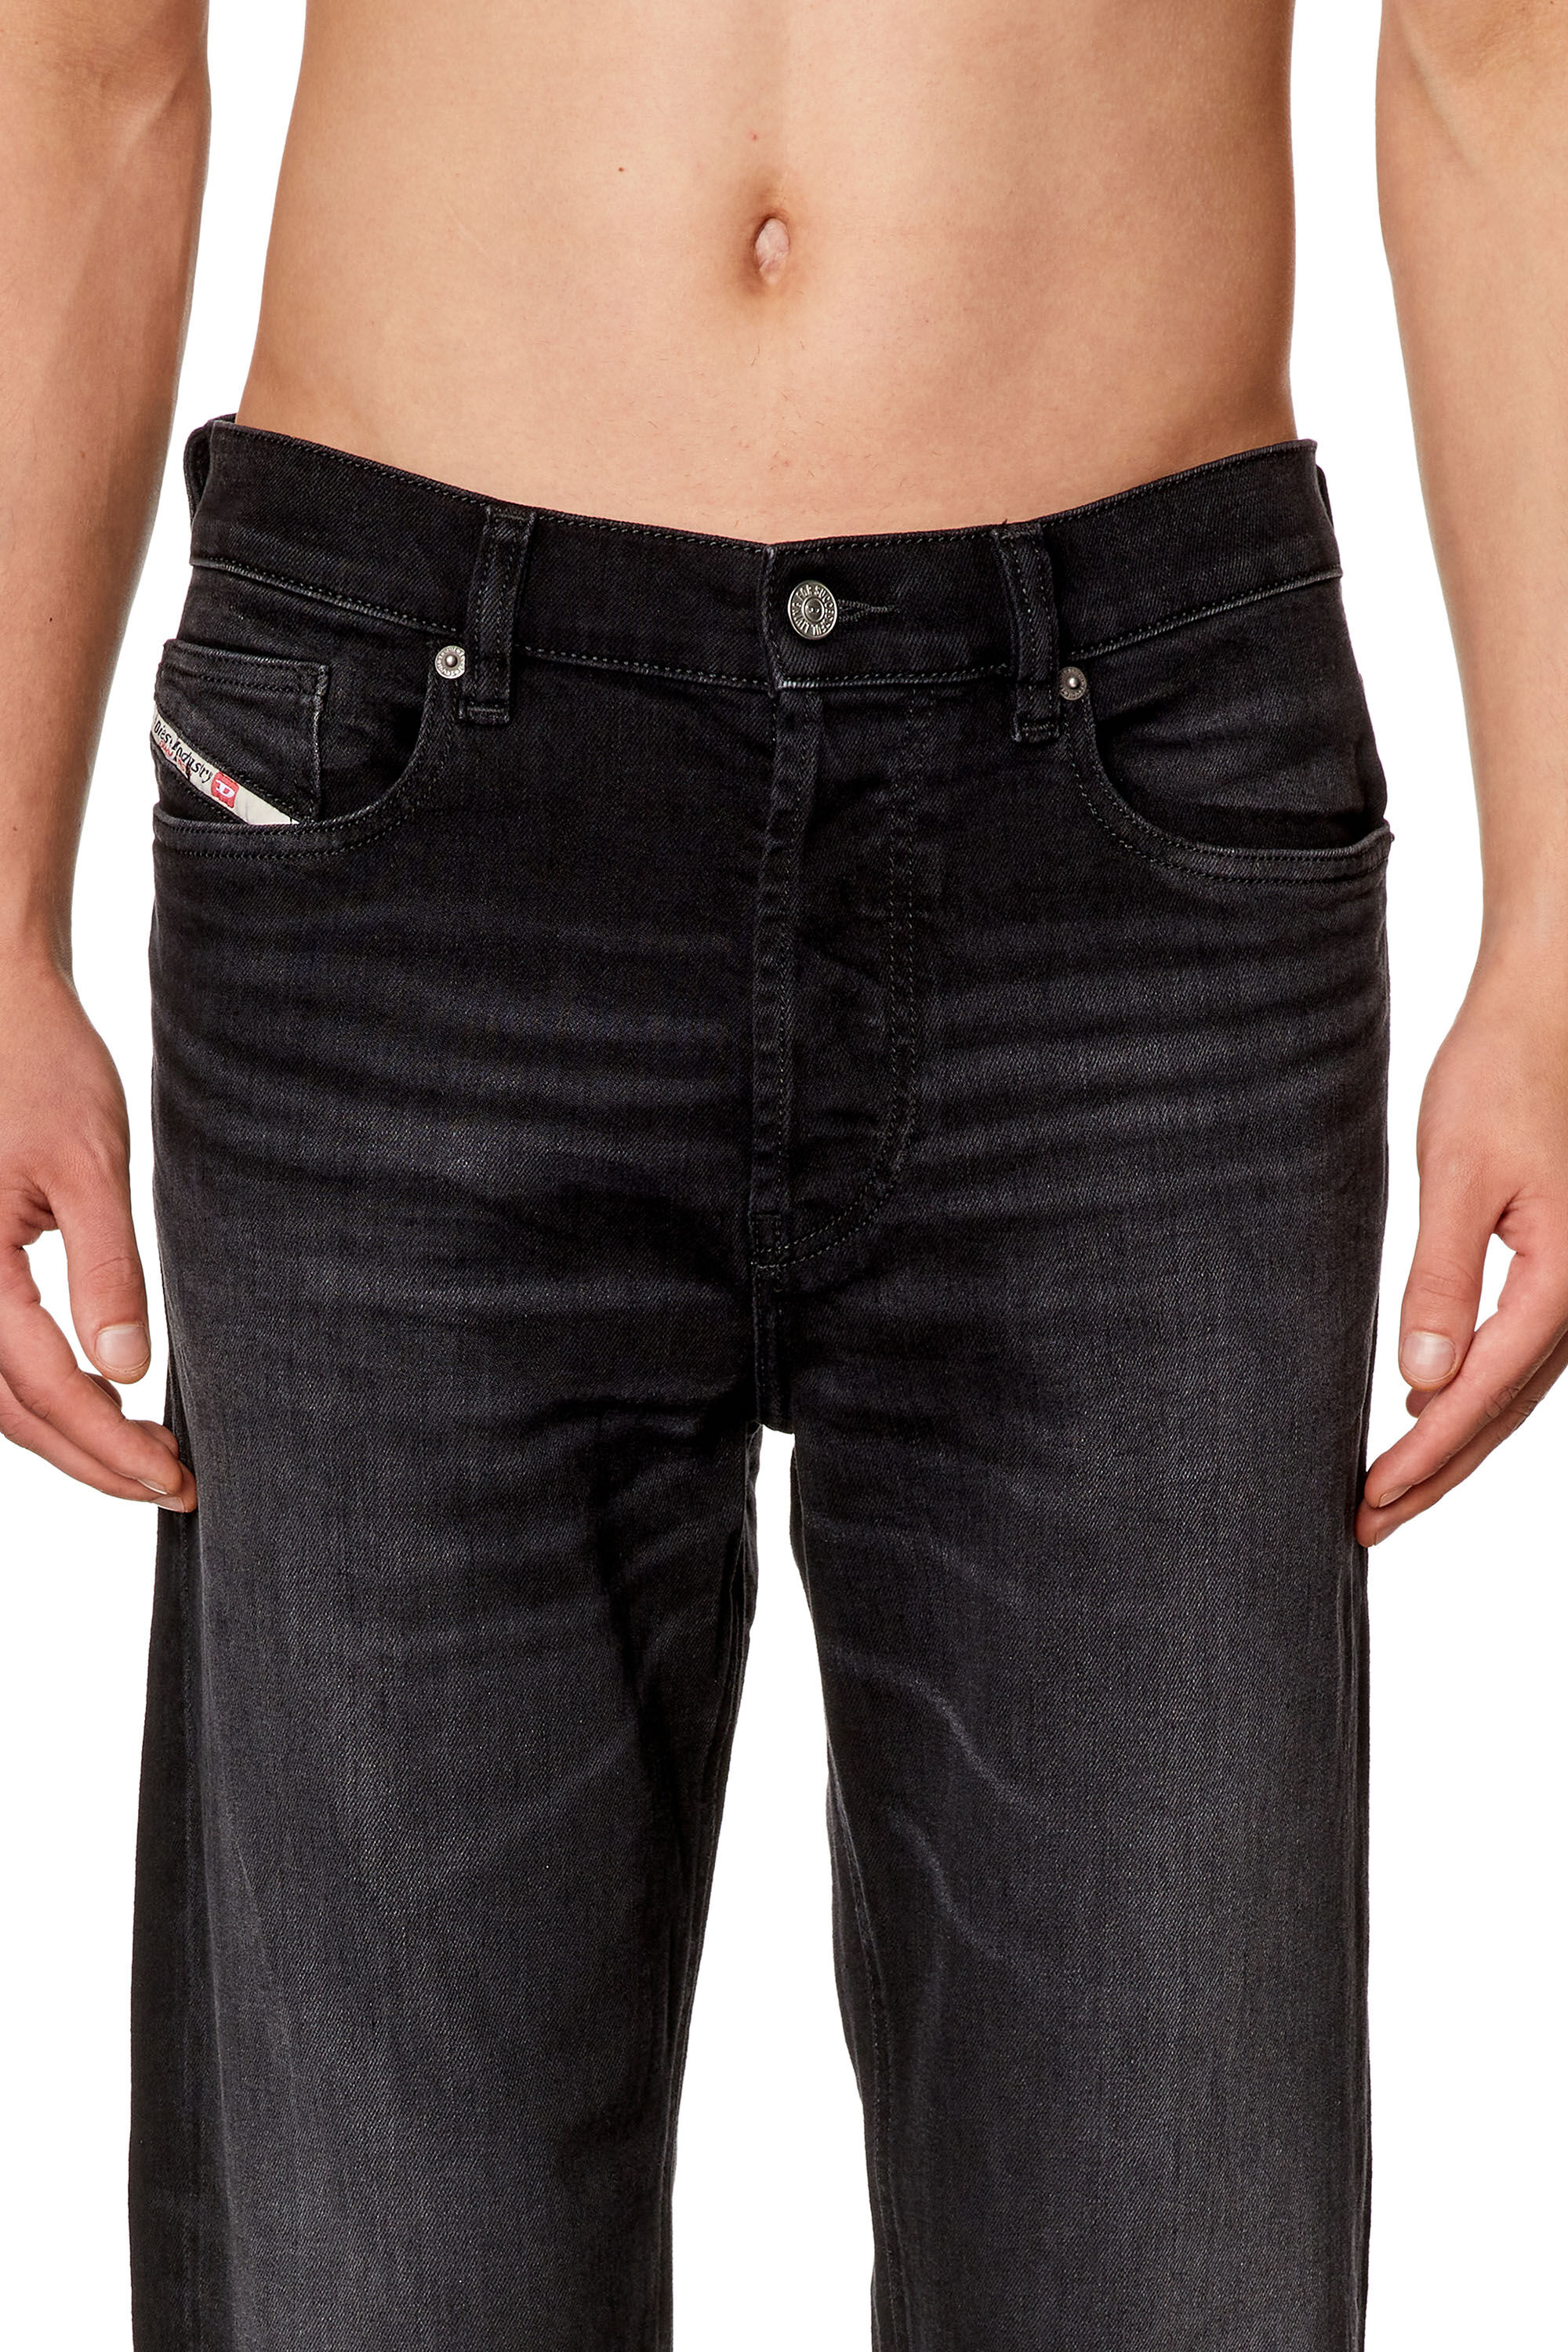 Men's Straight Jeans | Black/Dark grey | Diesel 2010 D-Macs